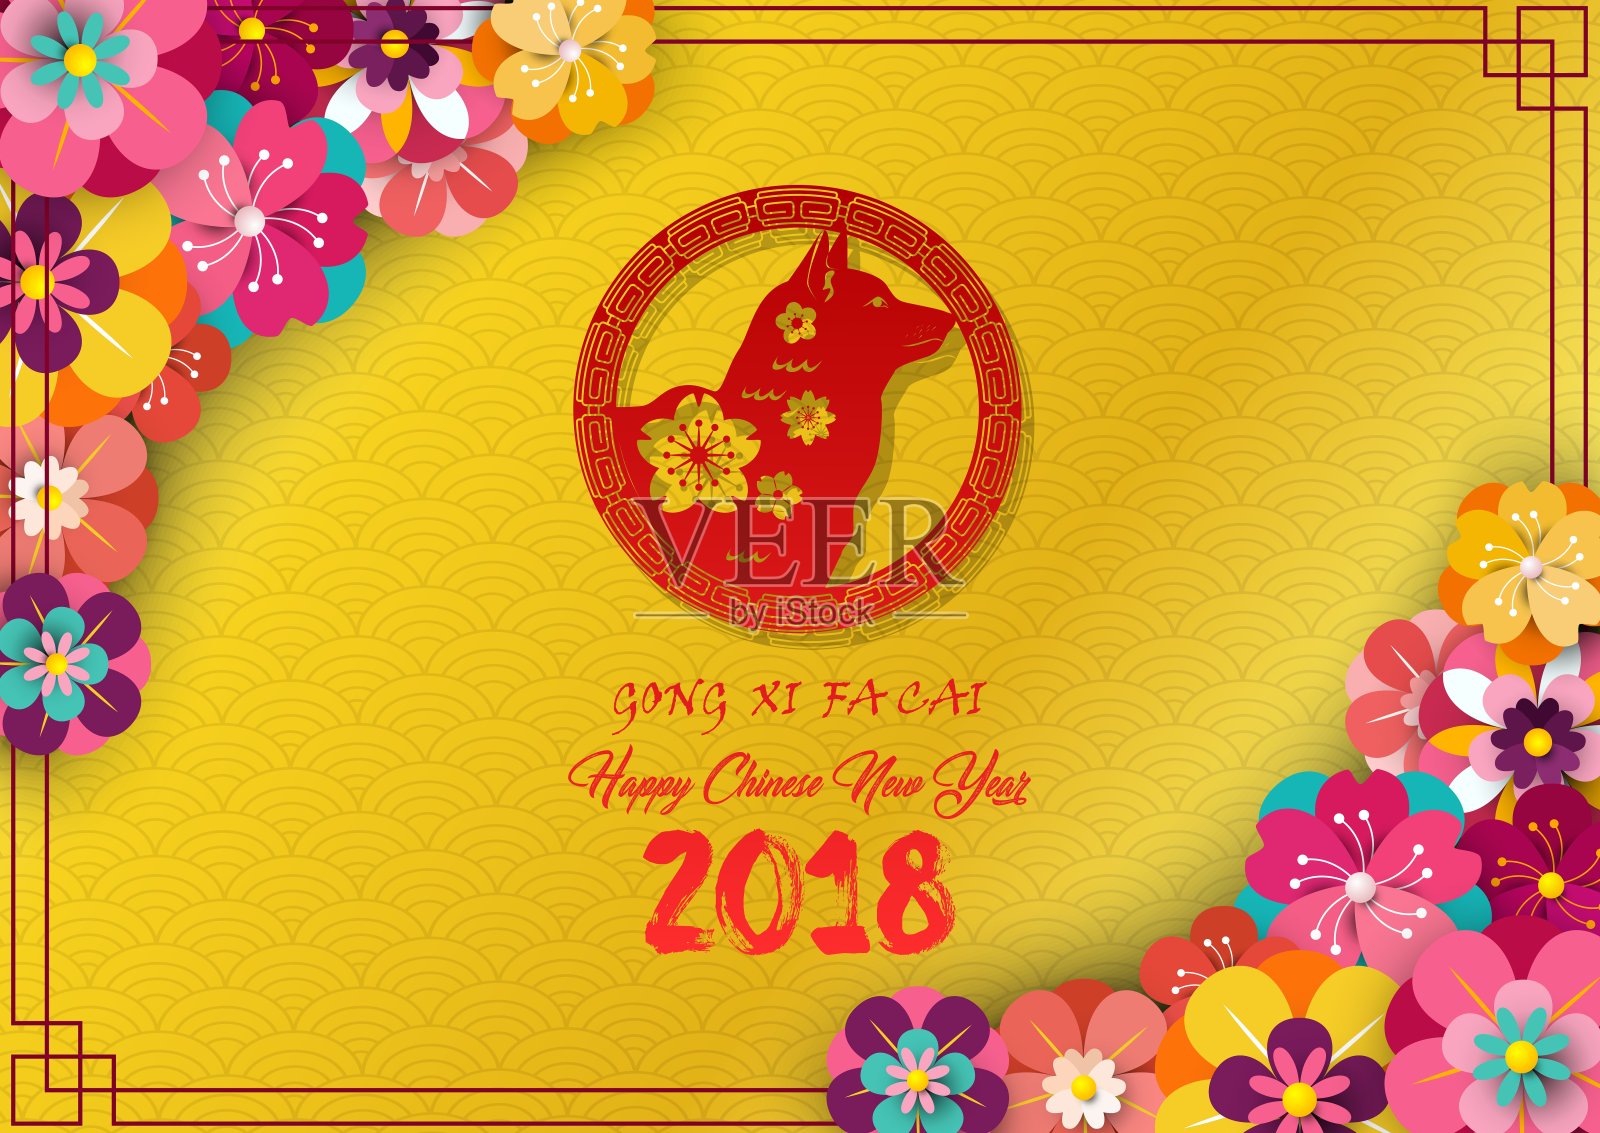 2018年中国新年贺卡，红色狗在框架和盛开的花朵在金色图案背景设计模板素材